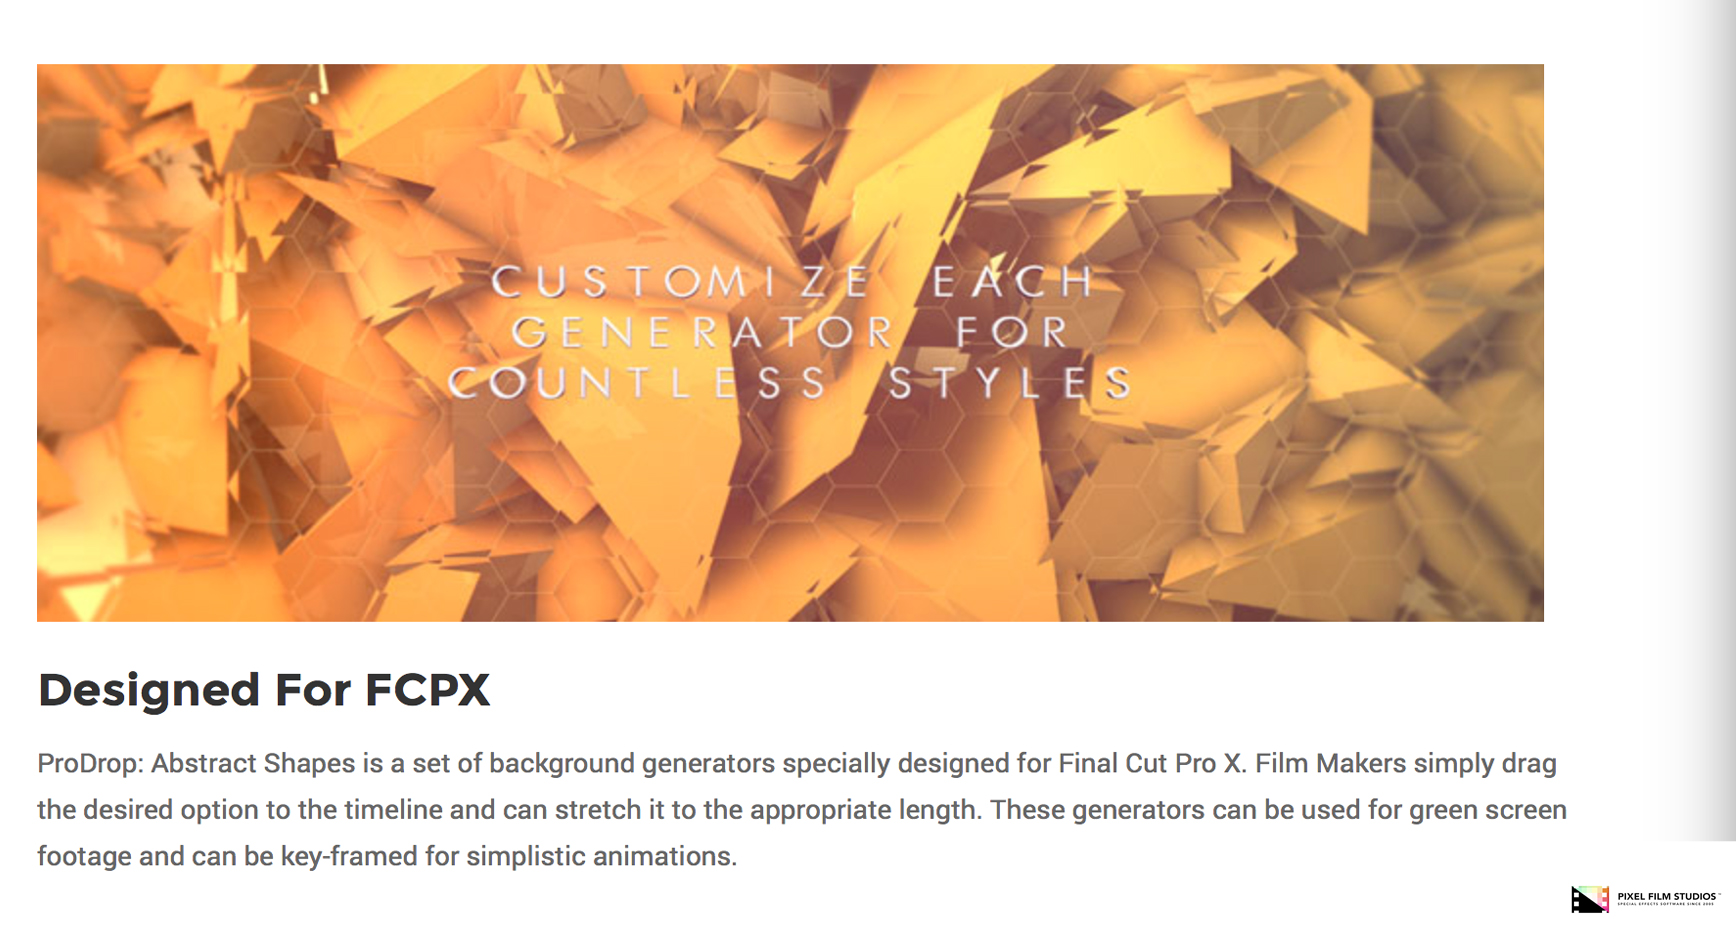 Final Cut Pro X Plugin - ProDrop Abstract Shapes - Pixel Film Studios